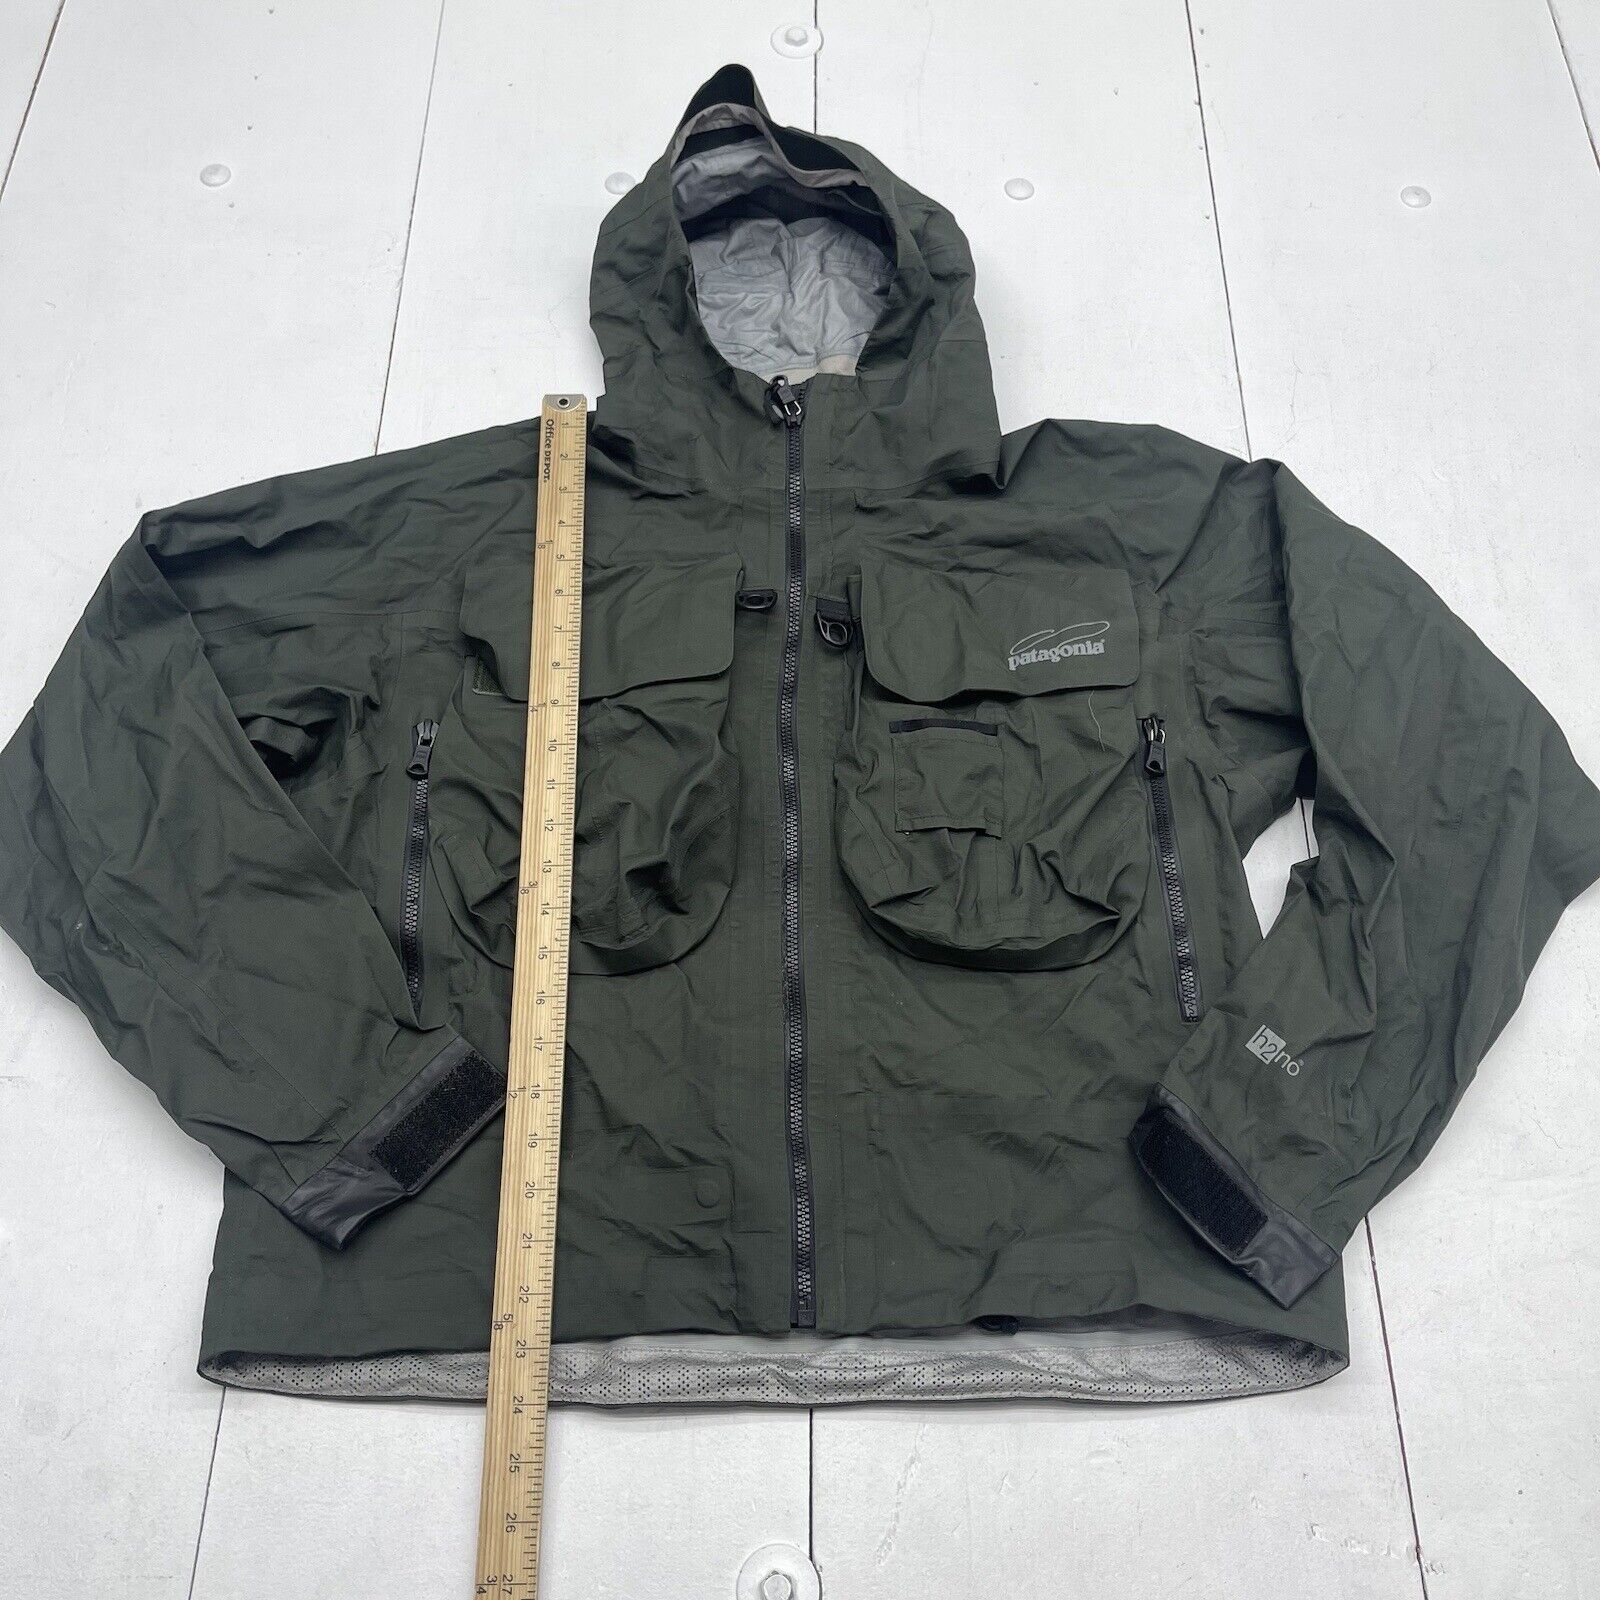 Patagonia SST Fishing Jacket Green Mens Size Medium 81862 - beyond exchange